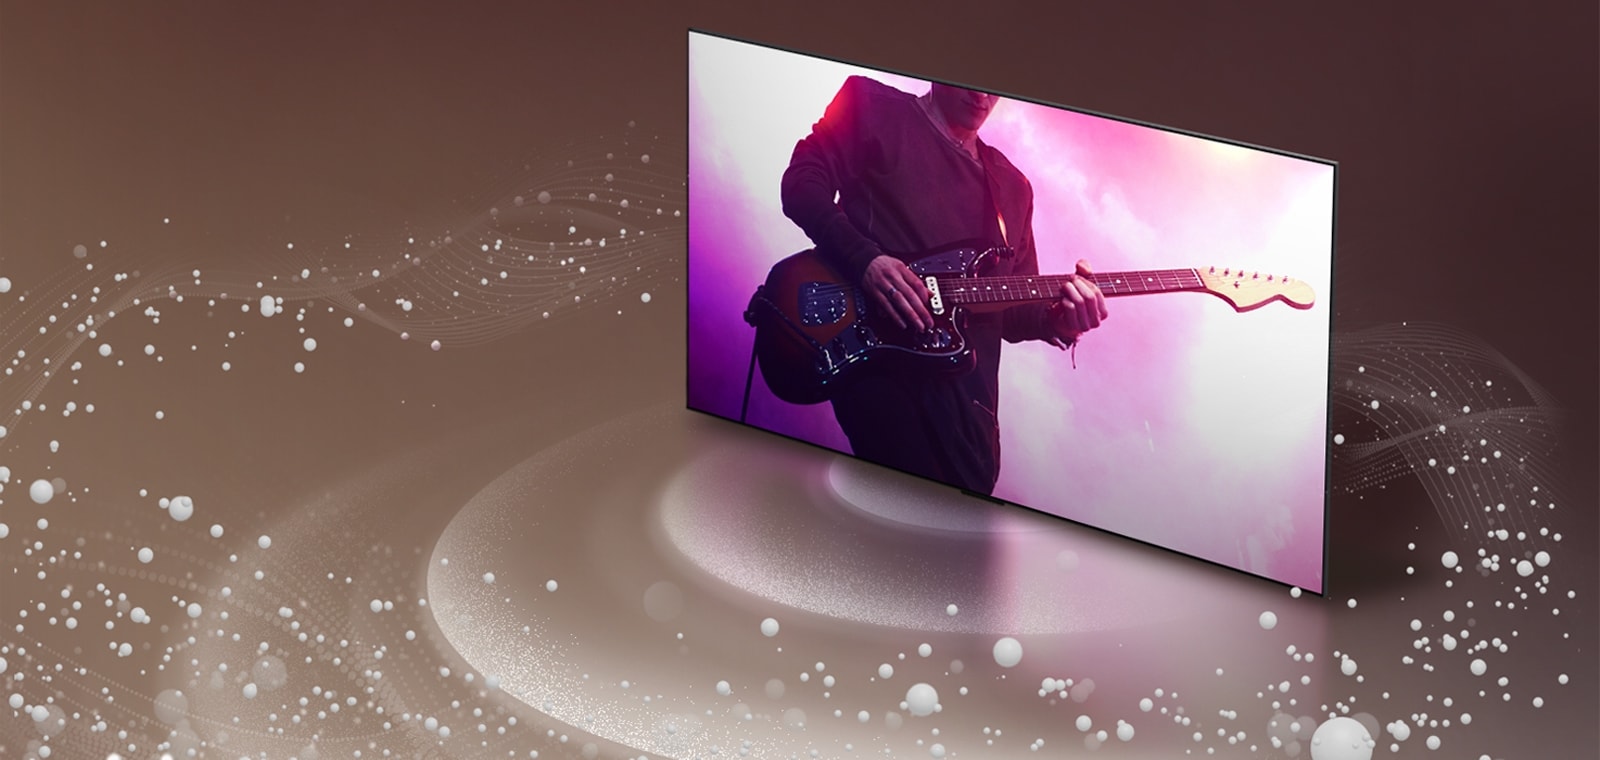 Телевизор LG OLED TV, от экрана которого исходят звуковые пузыри и волны, заполняющие пространство.